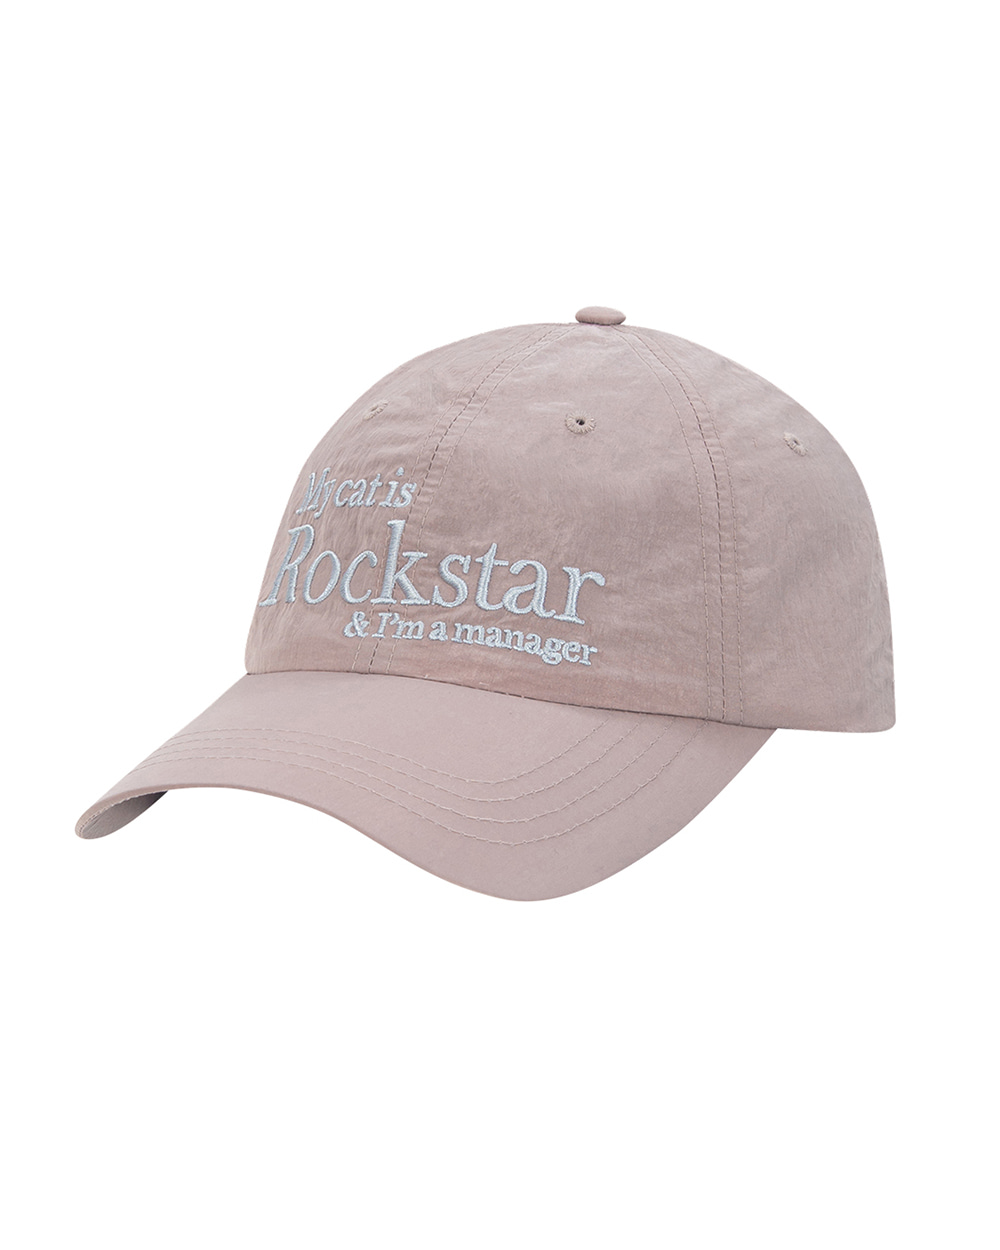 조거쉬 Rockstar cat cap (Baby Pink) *RESTOCK*